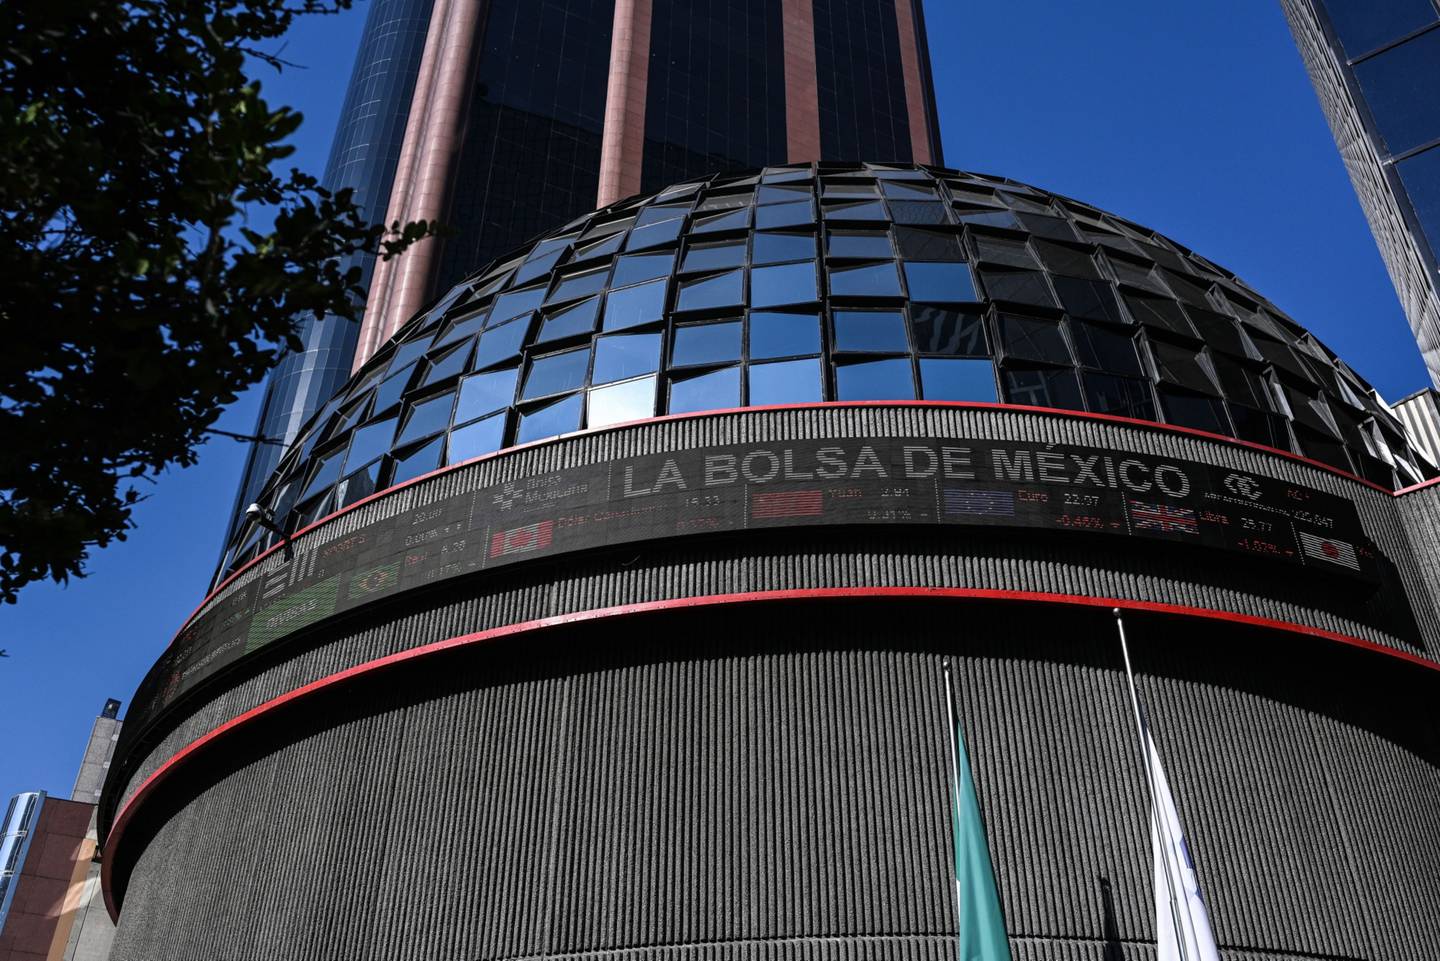 El mercado mexicano tiene una falta de capacidad para convertirse en un motor de riqueza para las empresas o los inversionista.